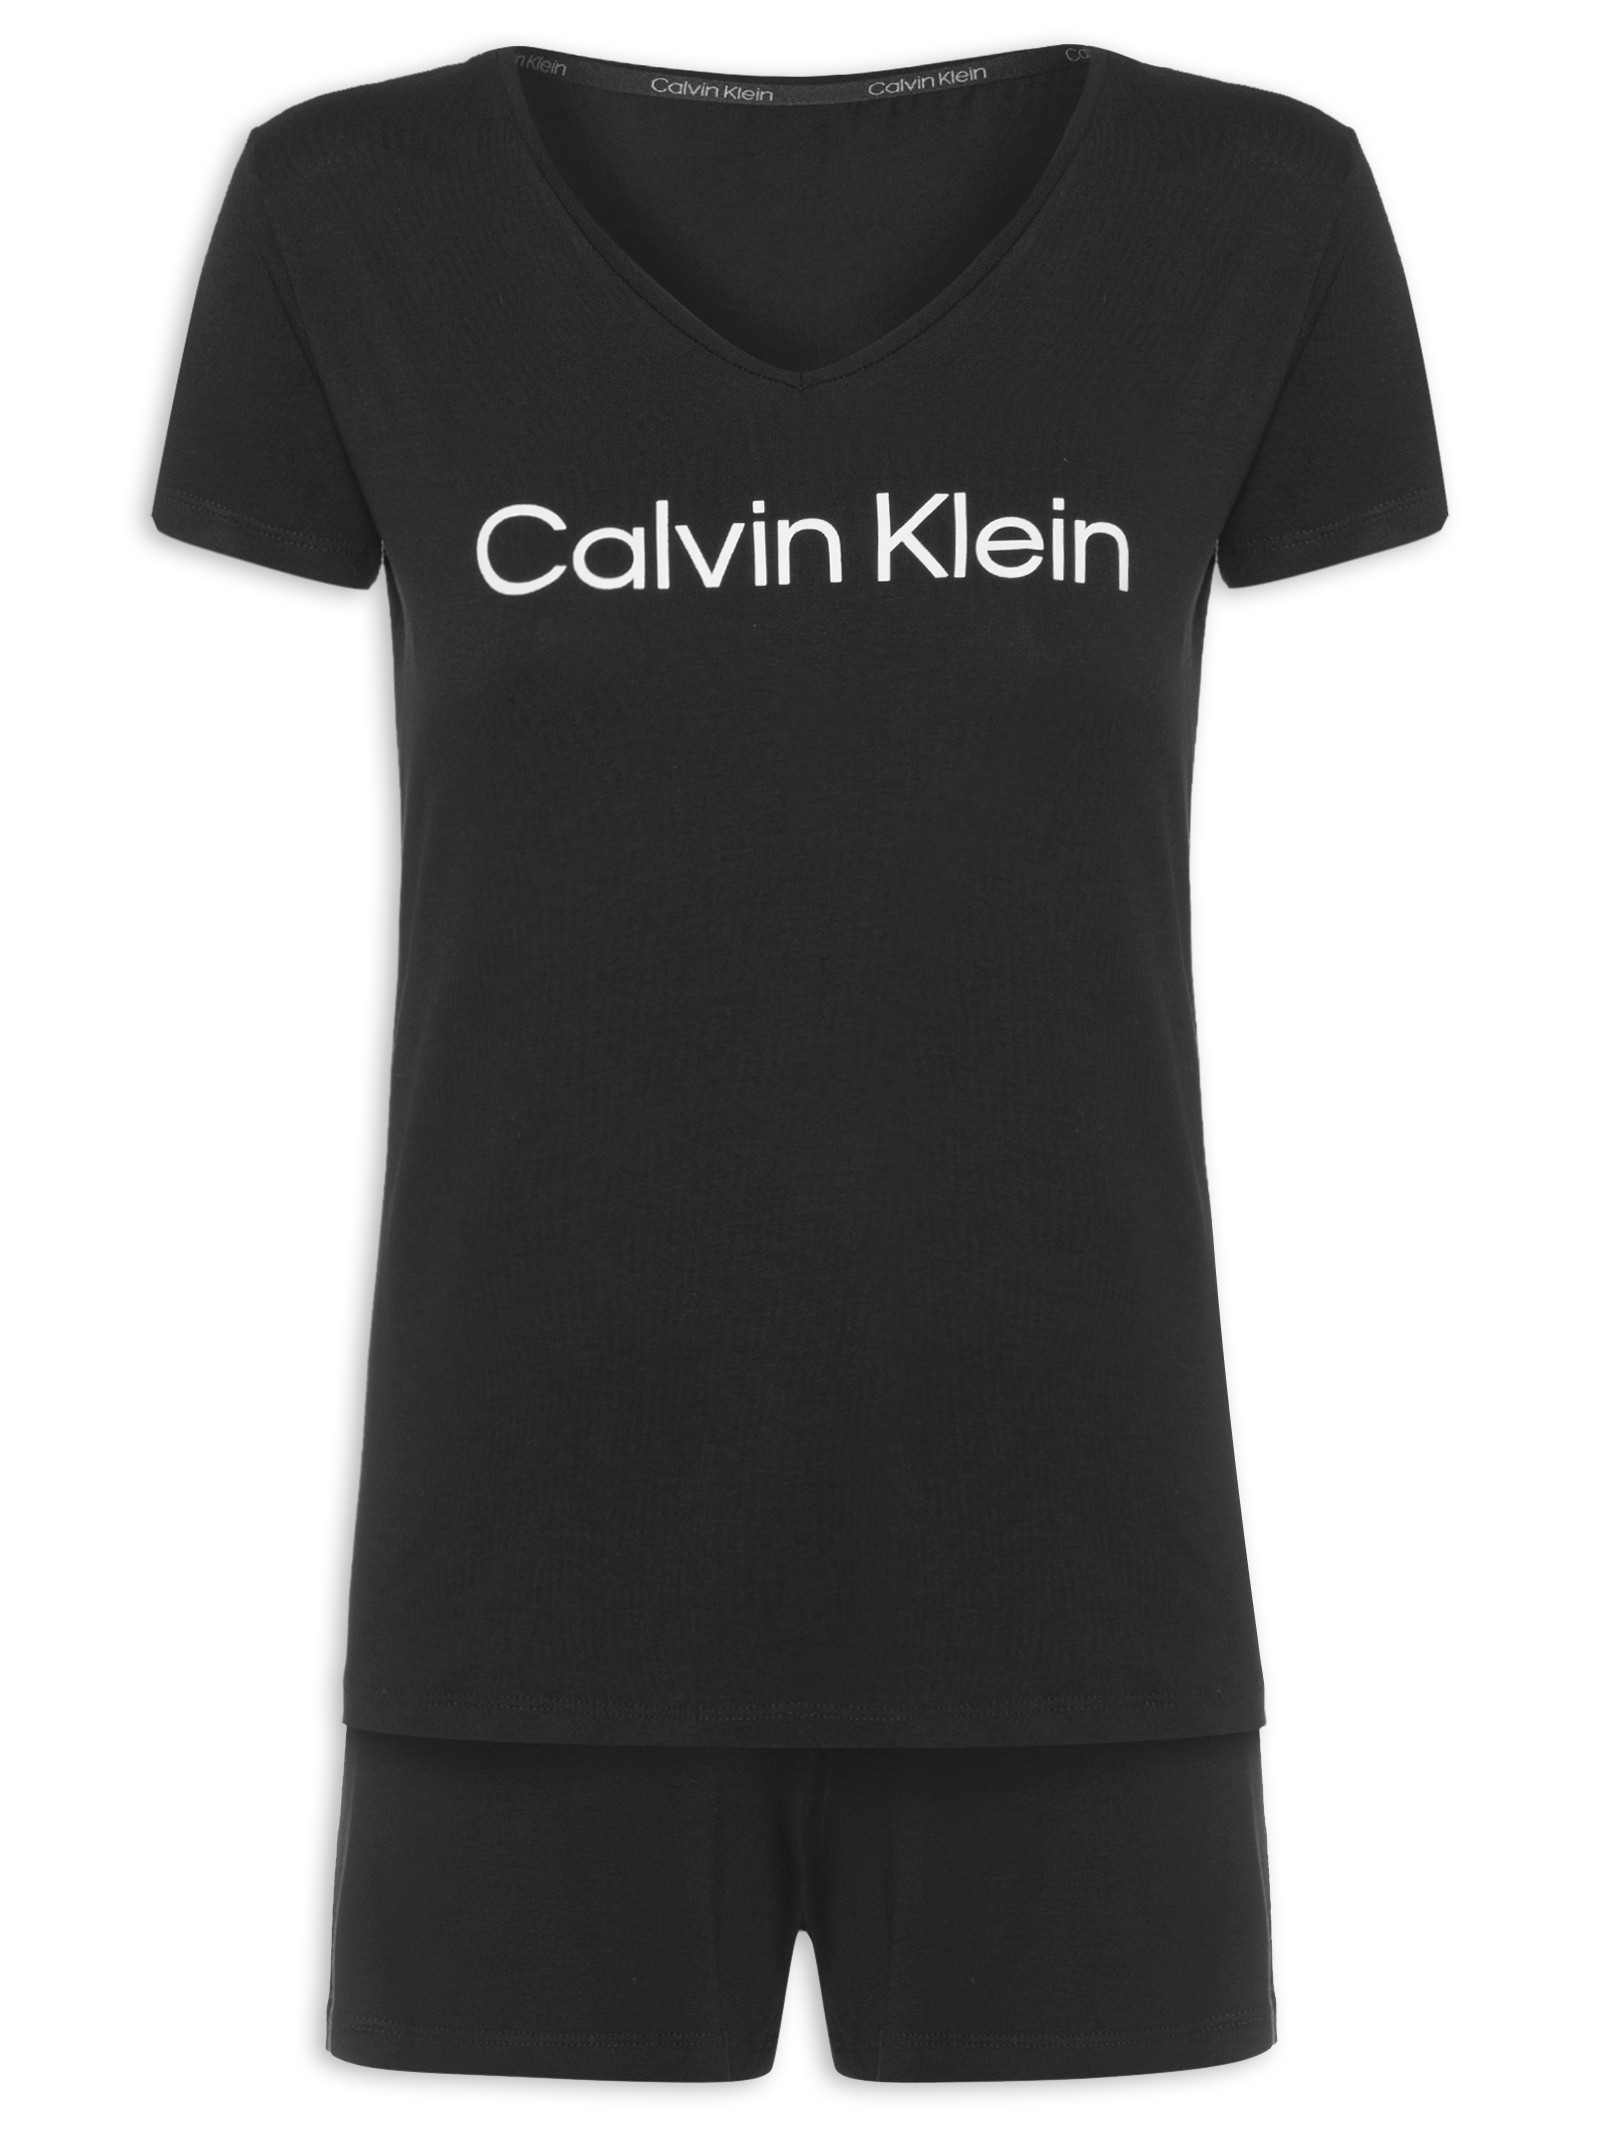 Calvin Klein Underwear - A - Z - Marcas - Feminino - Shop2gether